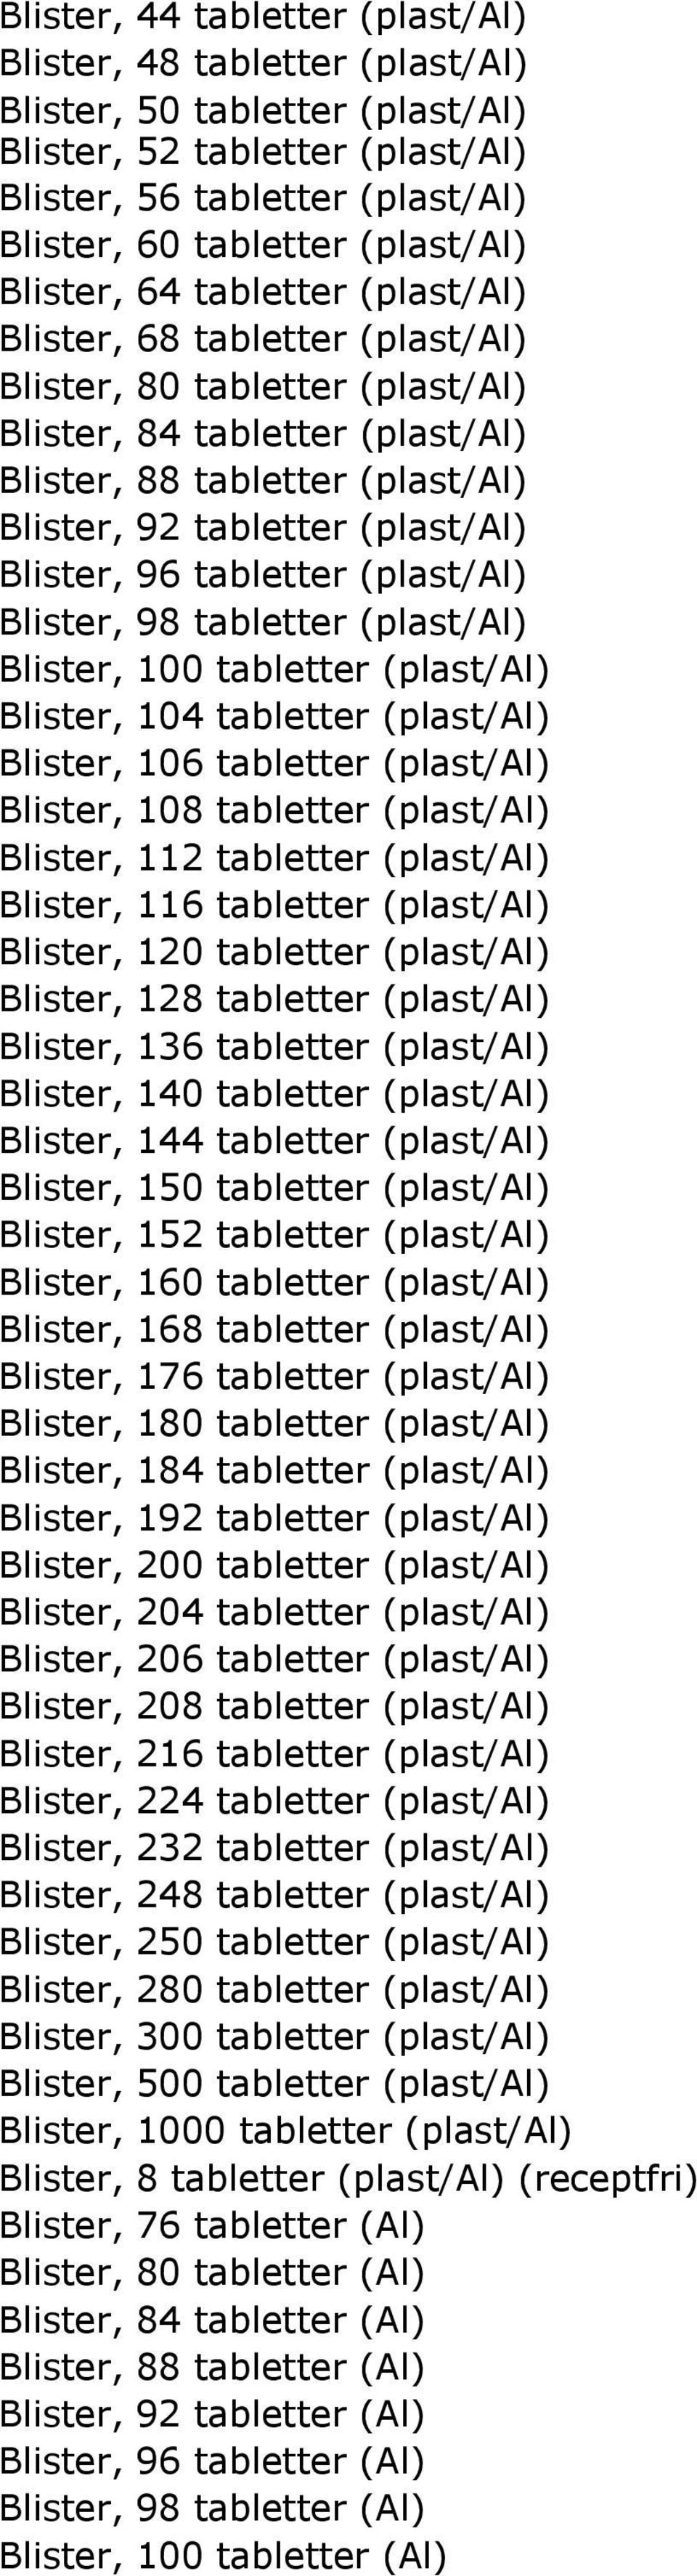 Blister, 96 tabletter (plast/al) Blister, 98 tabletter (plast/al) Blister, 100 tabletter (plast/al) Blister, 104 tabletter (plast/al) Blister, 106 tabletter (plast/al) Blister, 108 tabletter